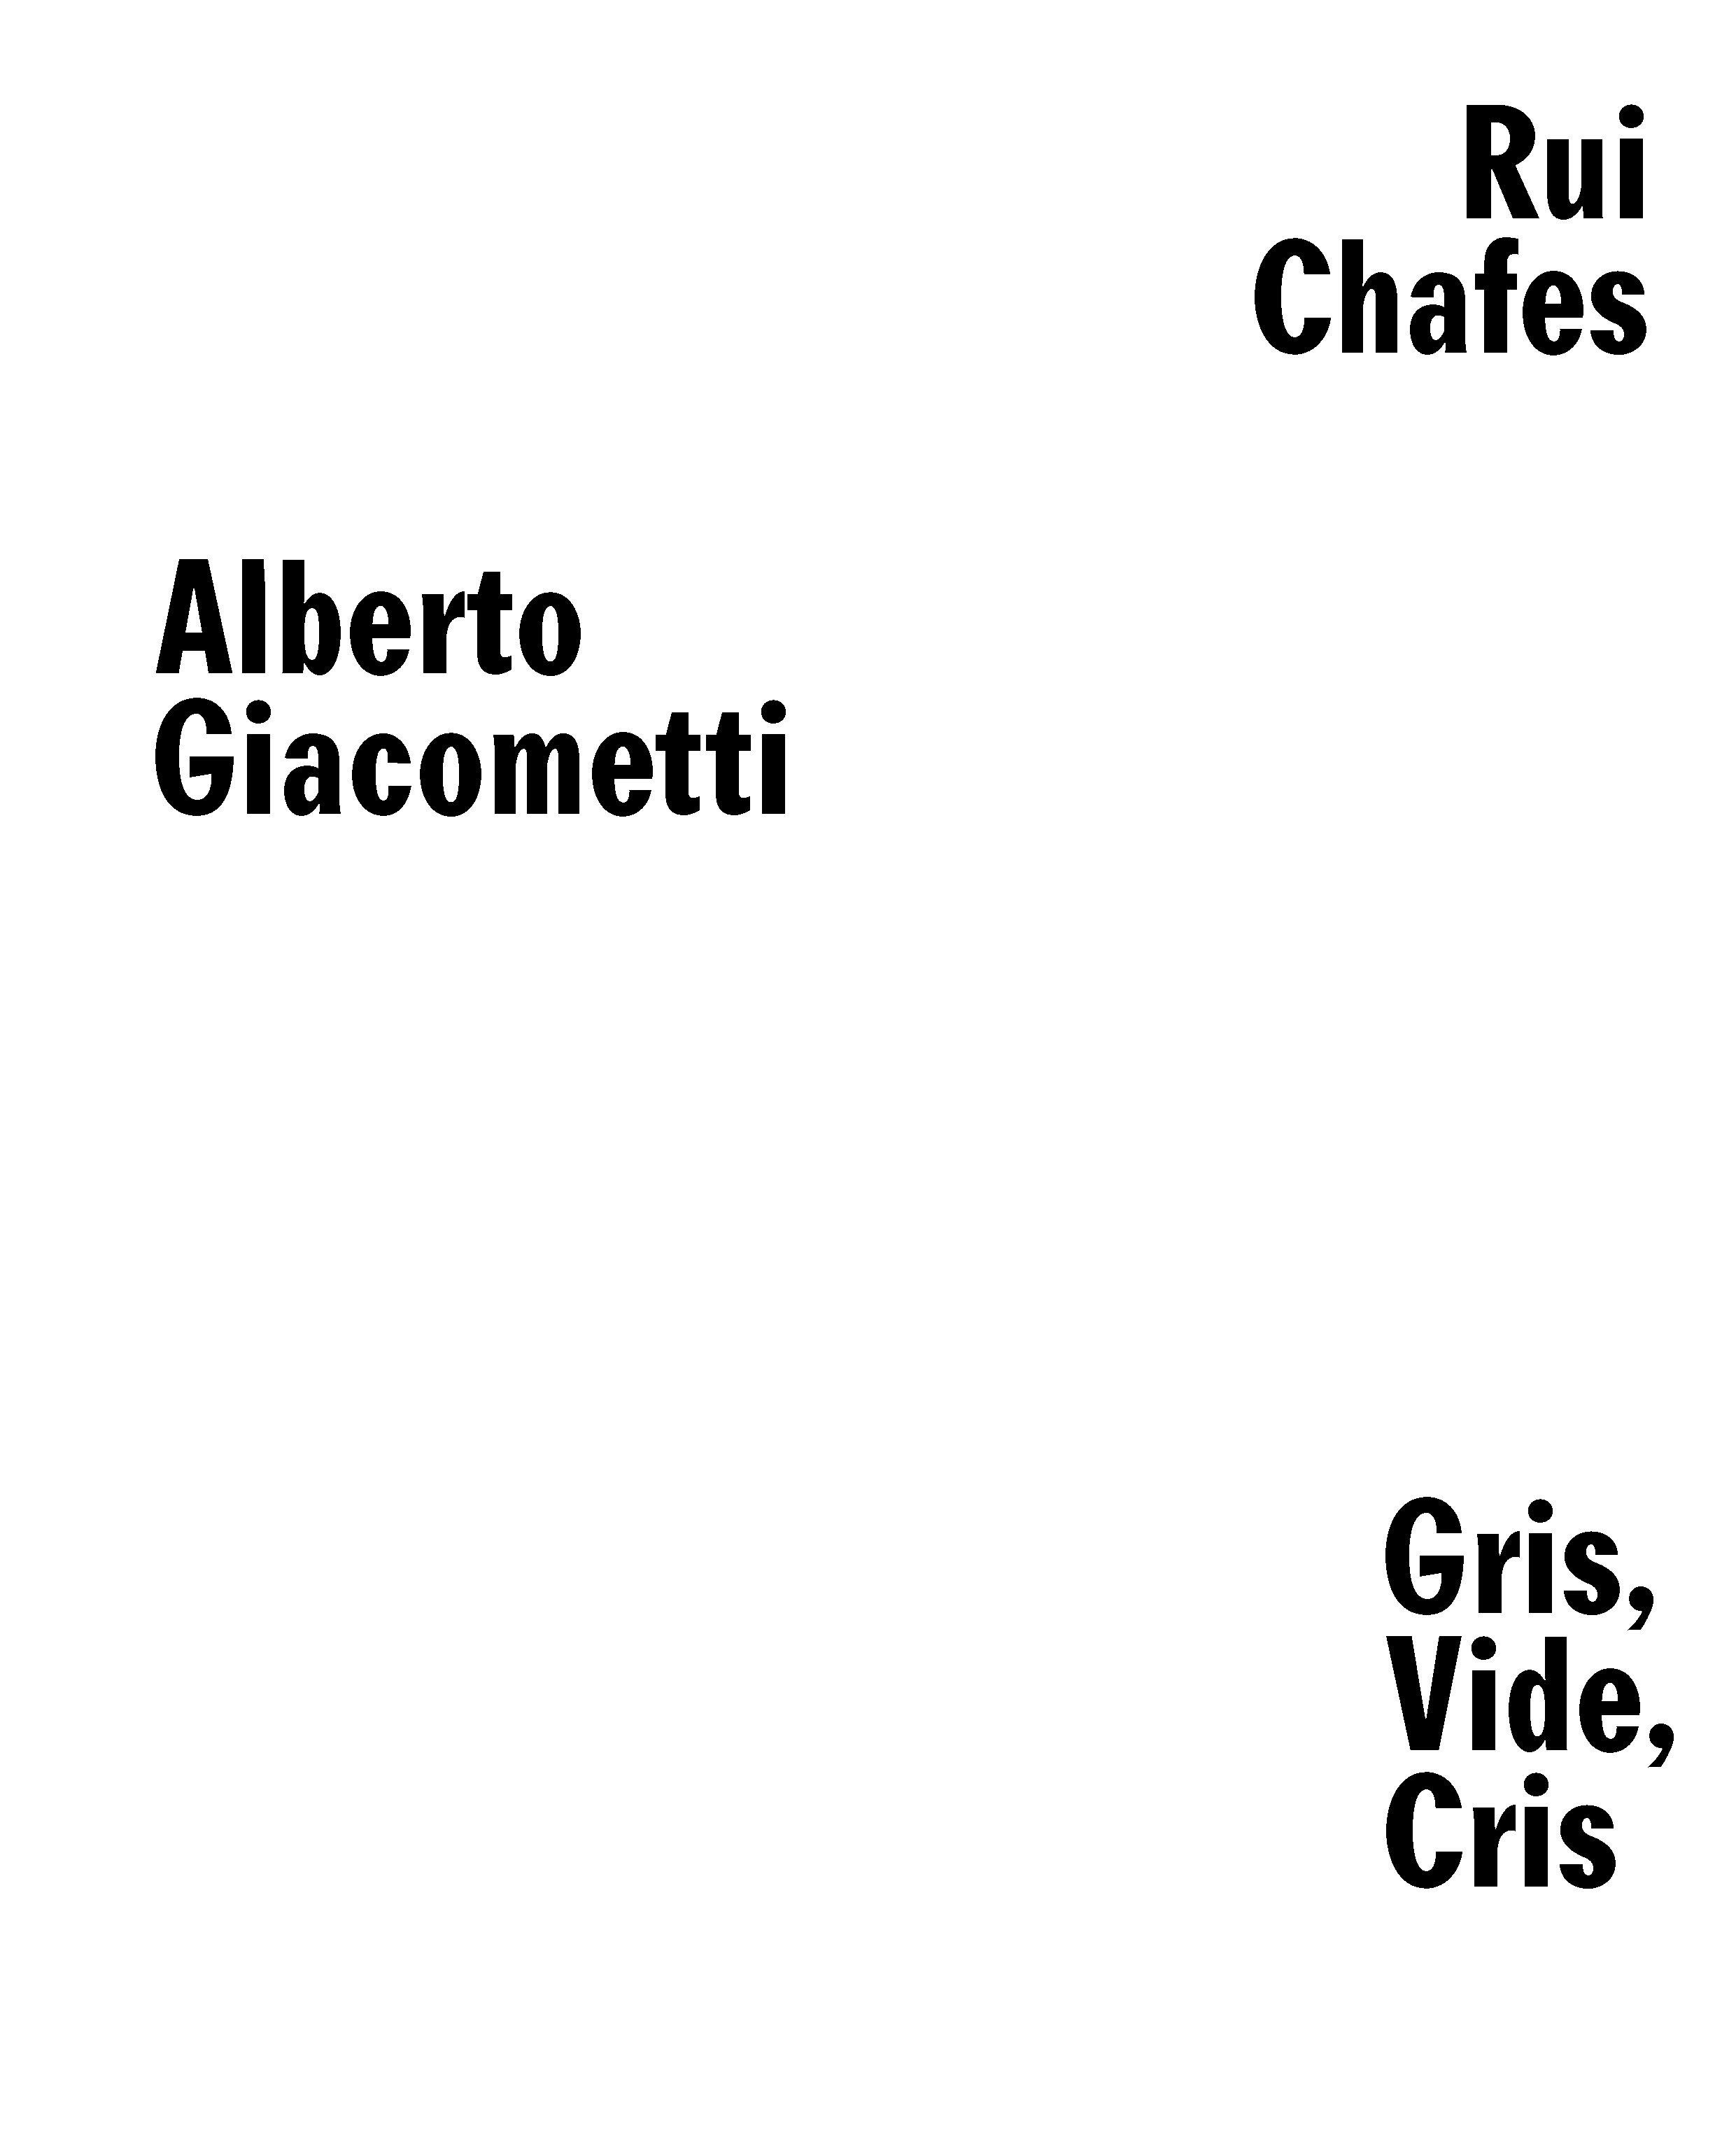 Rui Chafes, Alberto Giacometti. Gris, Vide, Cris